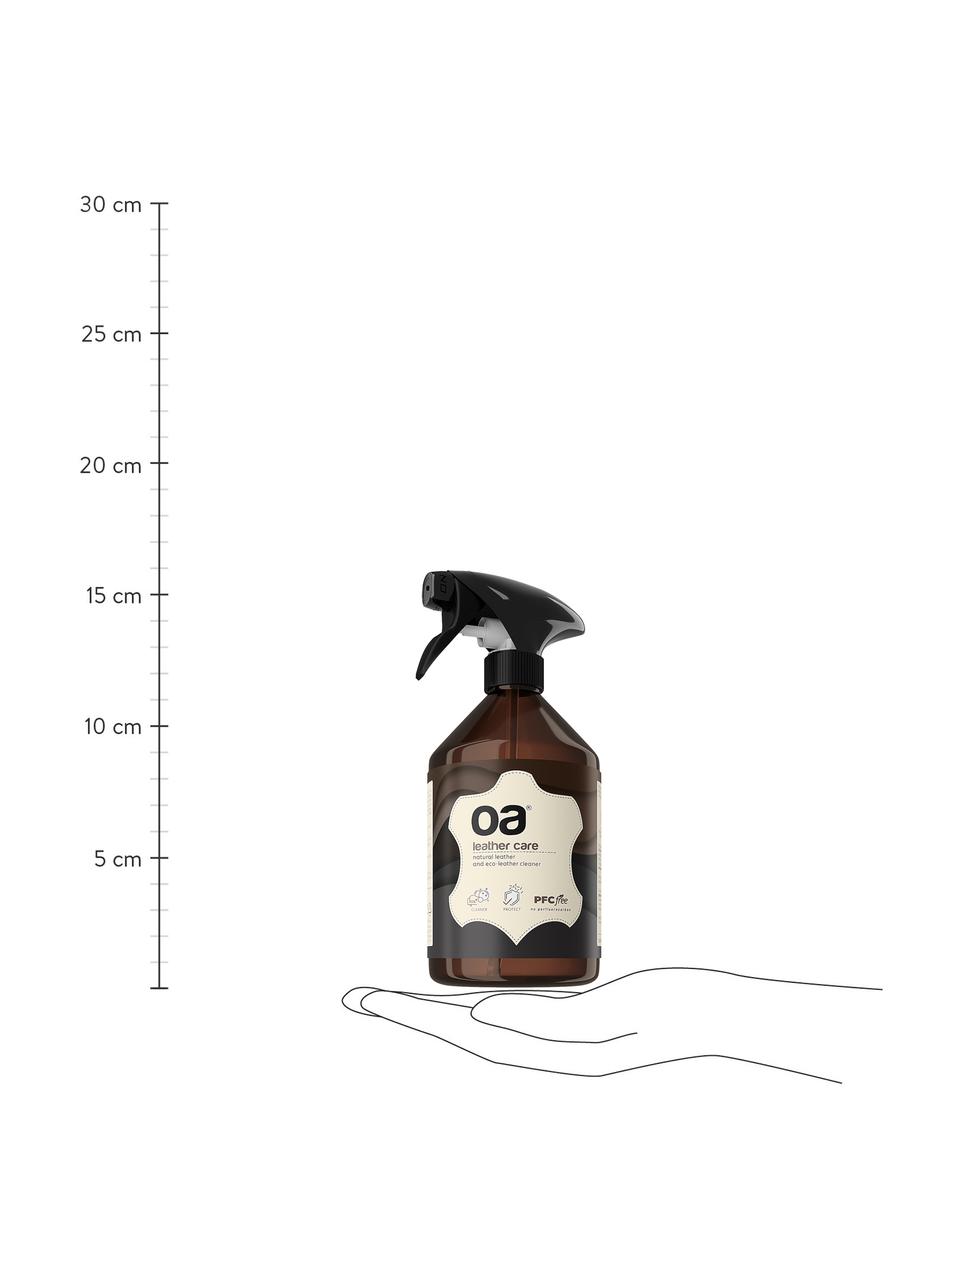 Detergente Leather Care, - Privo di PFC
- Privo di gas VOC
- Vegano
- Biodegradabile, Detergenti per la pelle, 500 ml